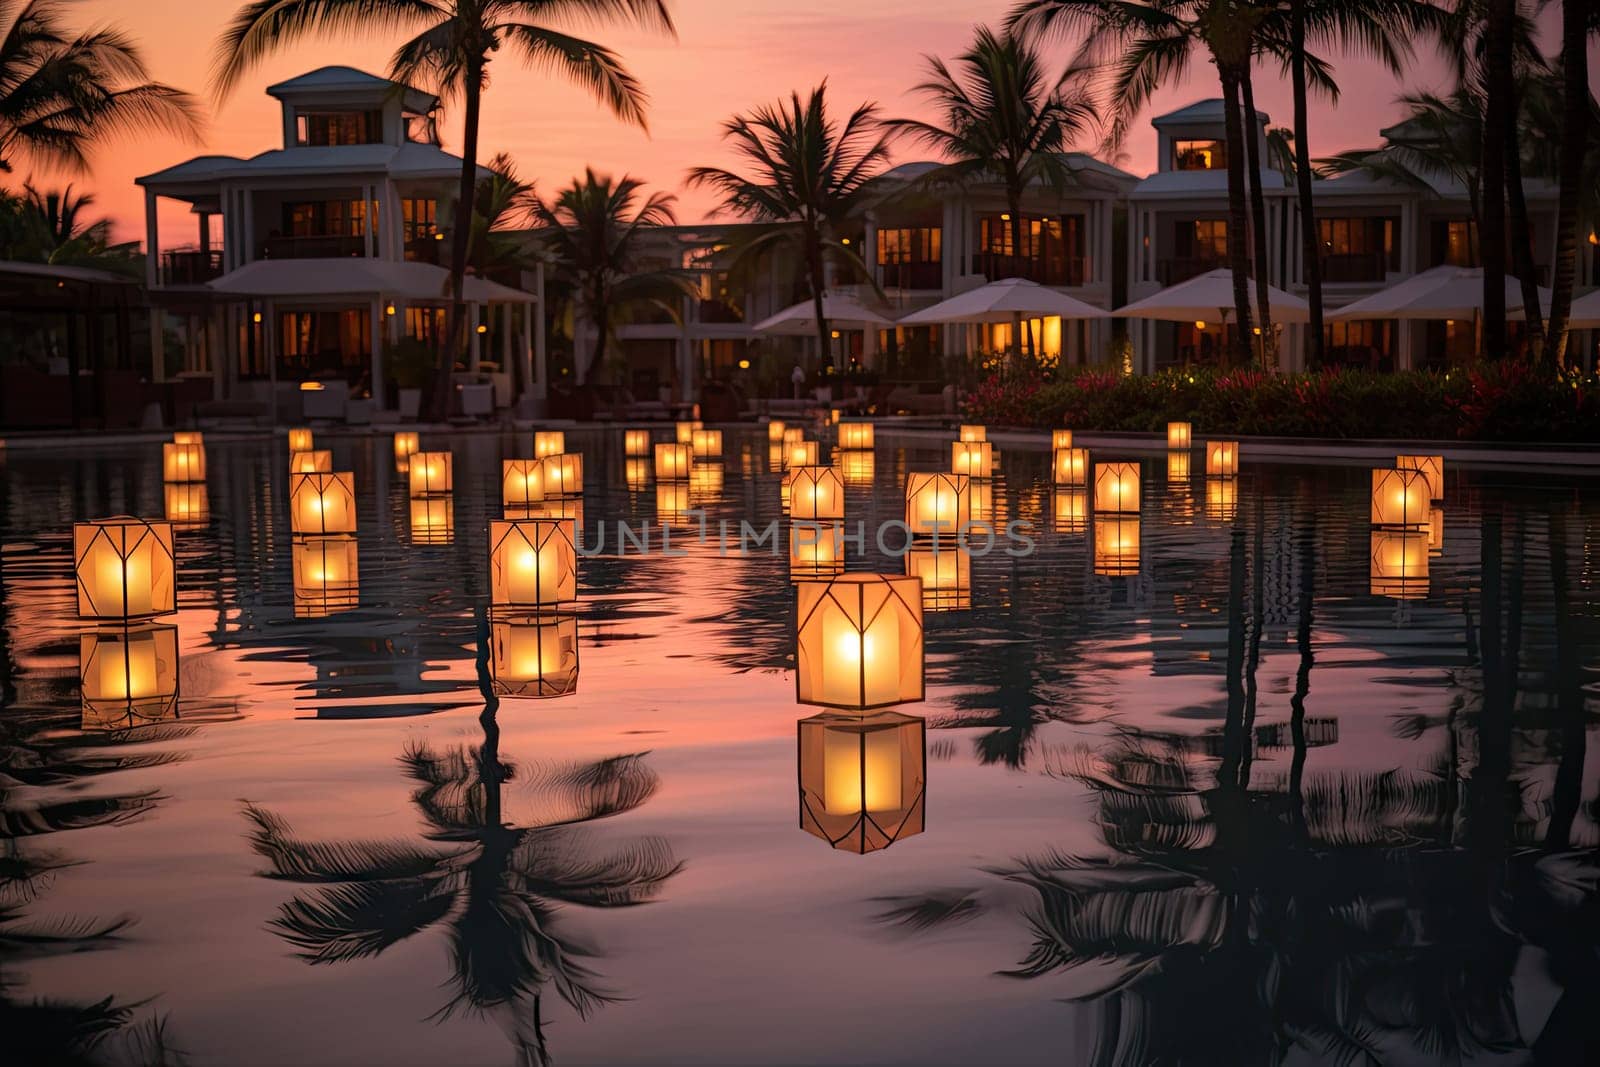 Floating Lanterns Illuminate the Serene Waters at Dusk